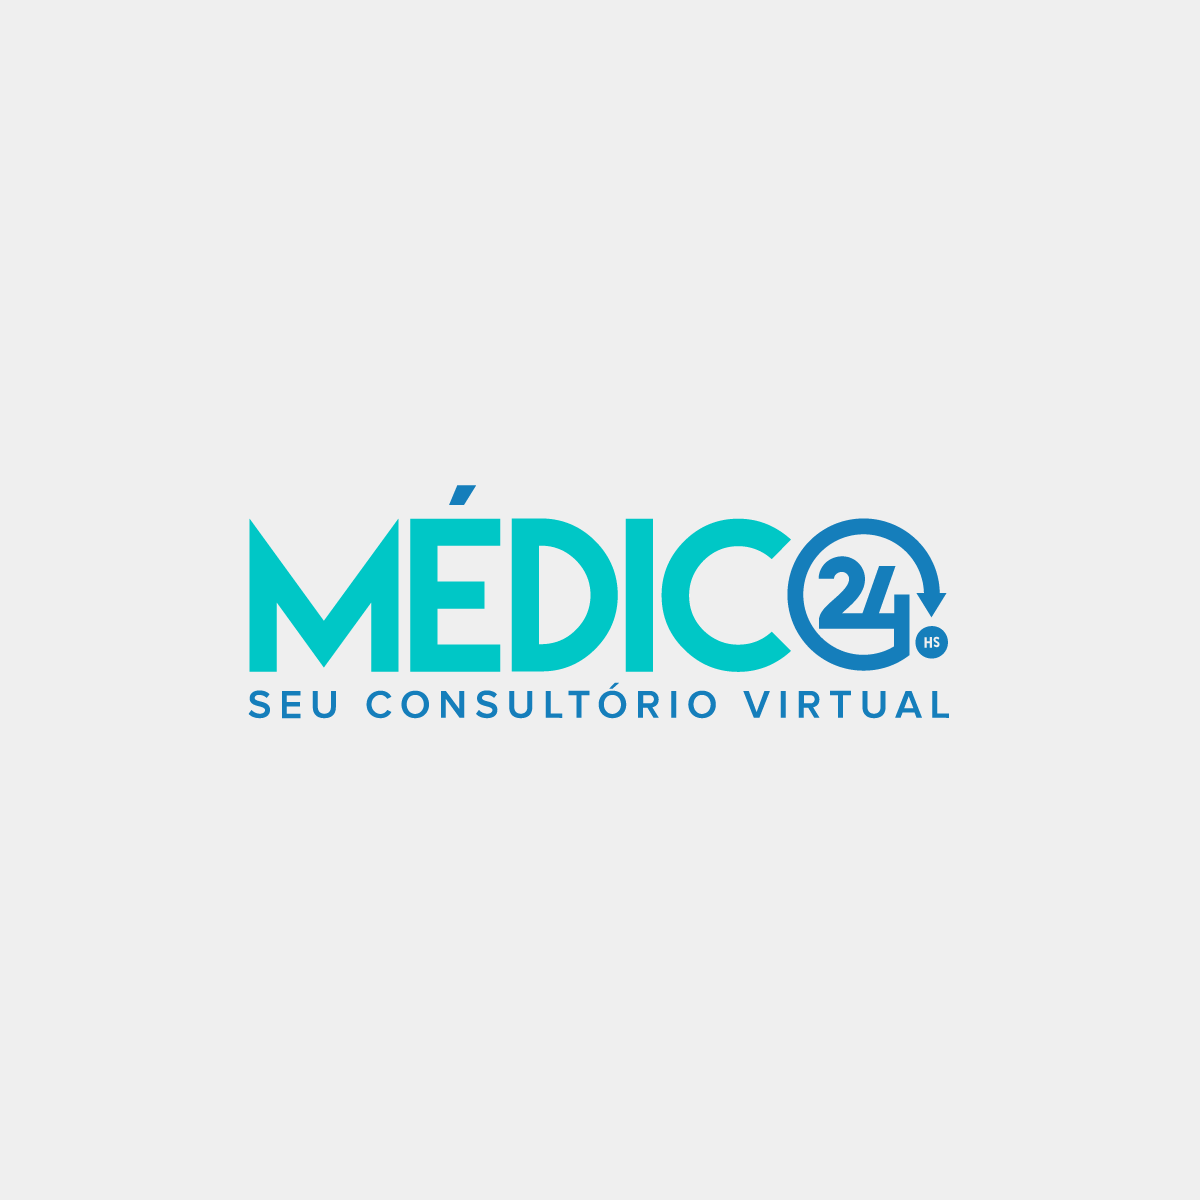 https://www.brasiltelemedicina.com.br/wp-content/uploads/2016/07/Logo_Medico24hs-1200x1200.png